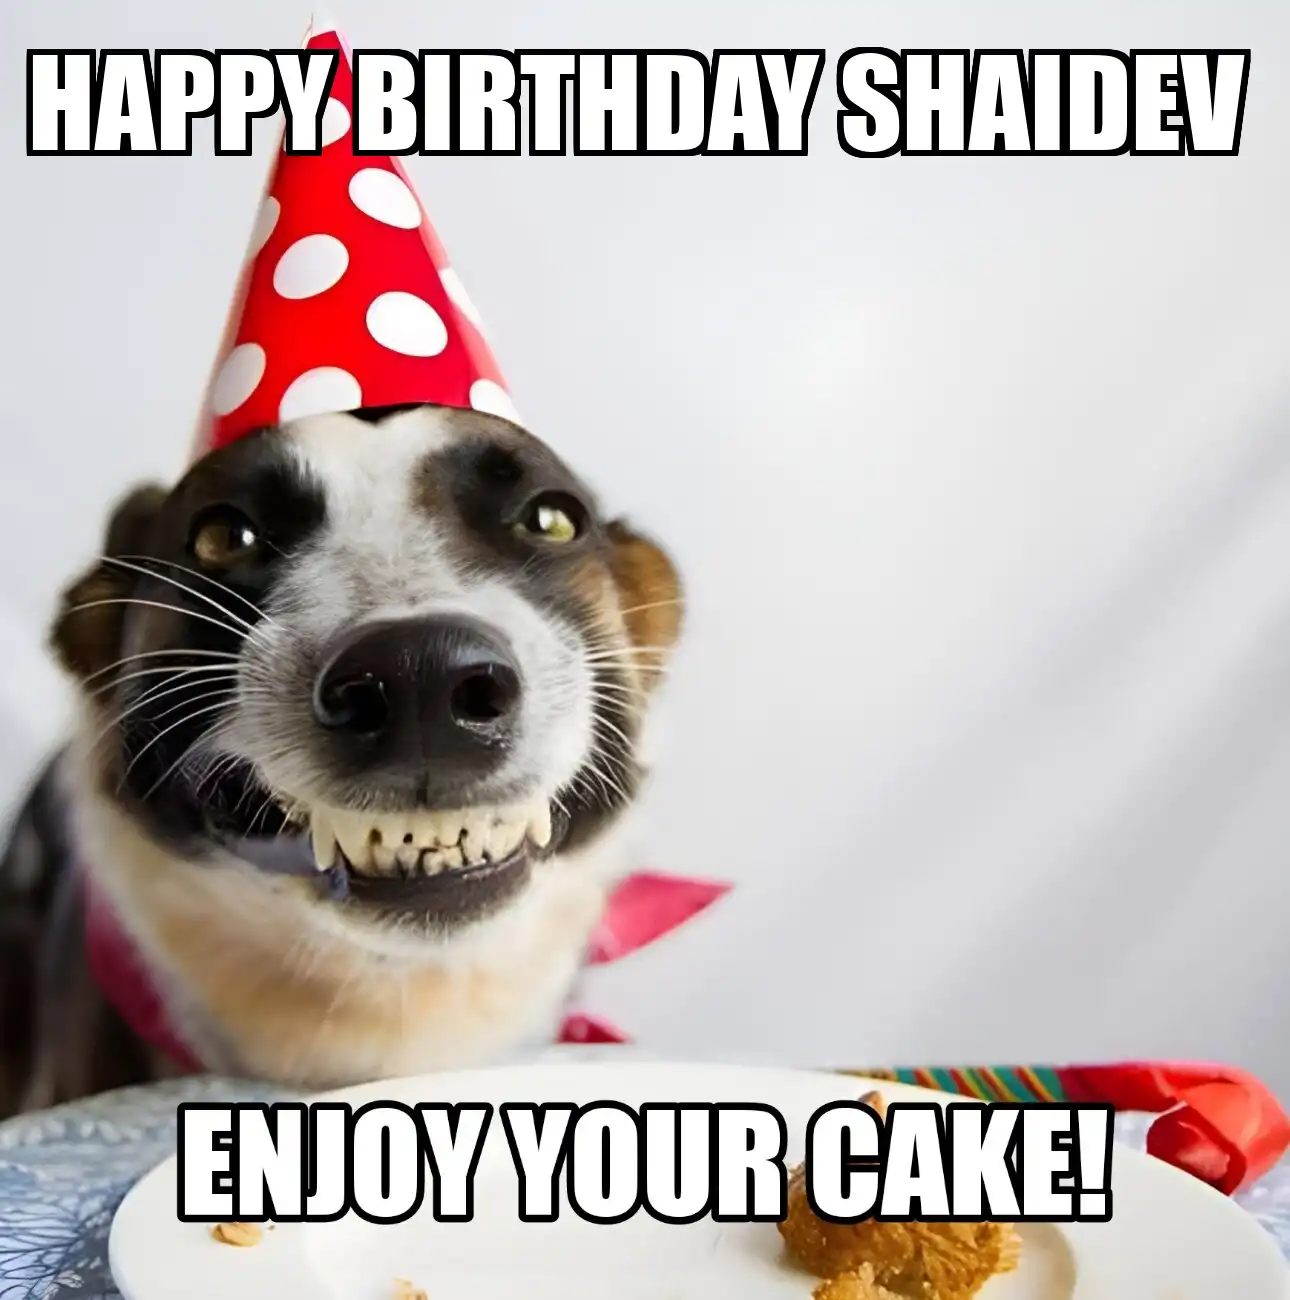 Happy Birthday Shaidev Enjoy Your Cake Dog Meme